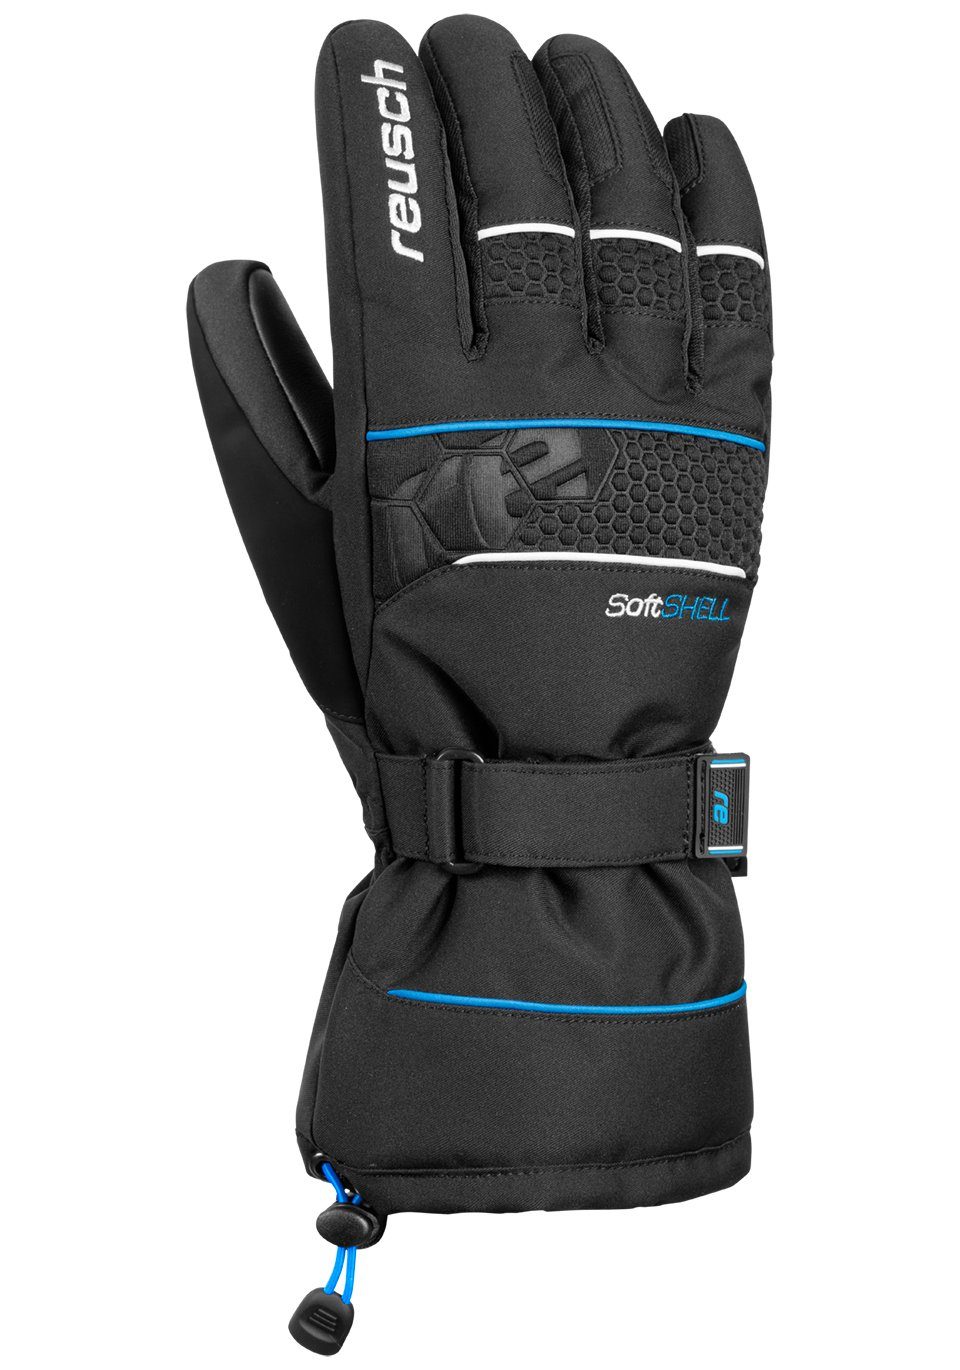 Reusch Skihandschuhe Connor R-TEX XT in blau-schwarz sportlichem Design